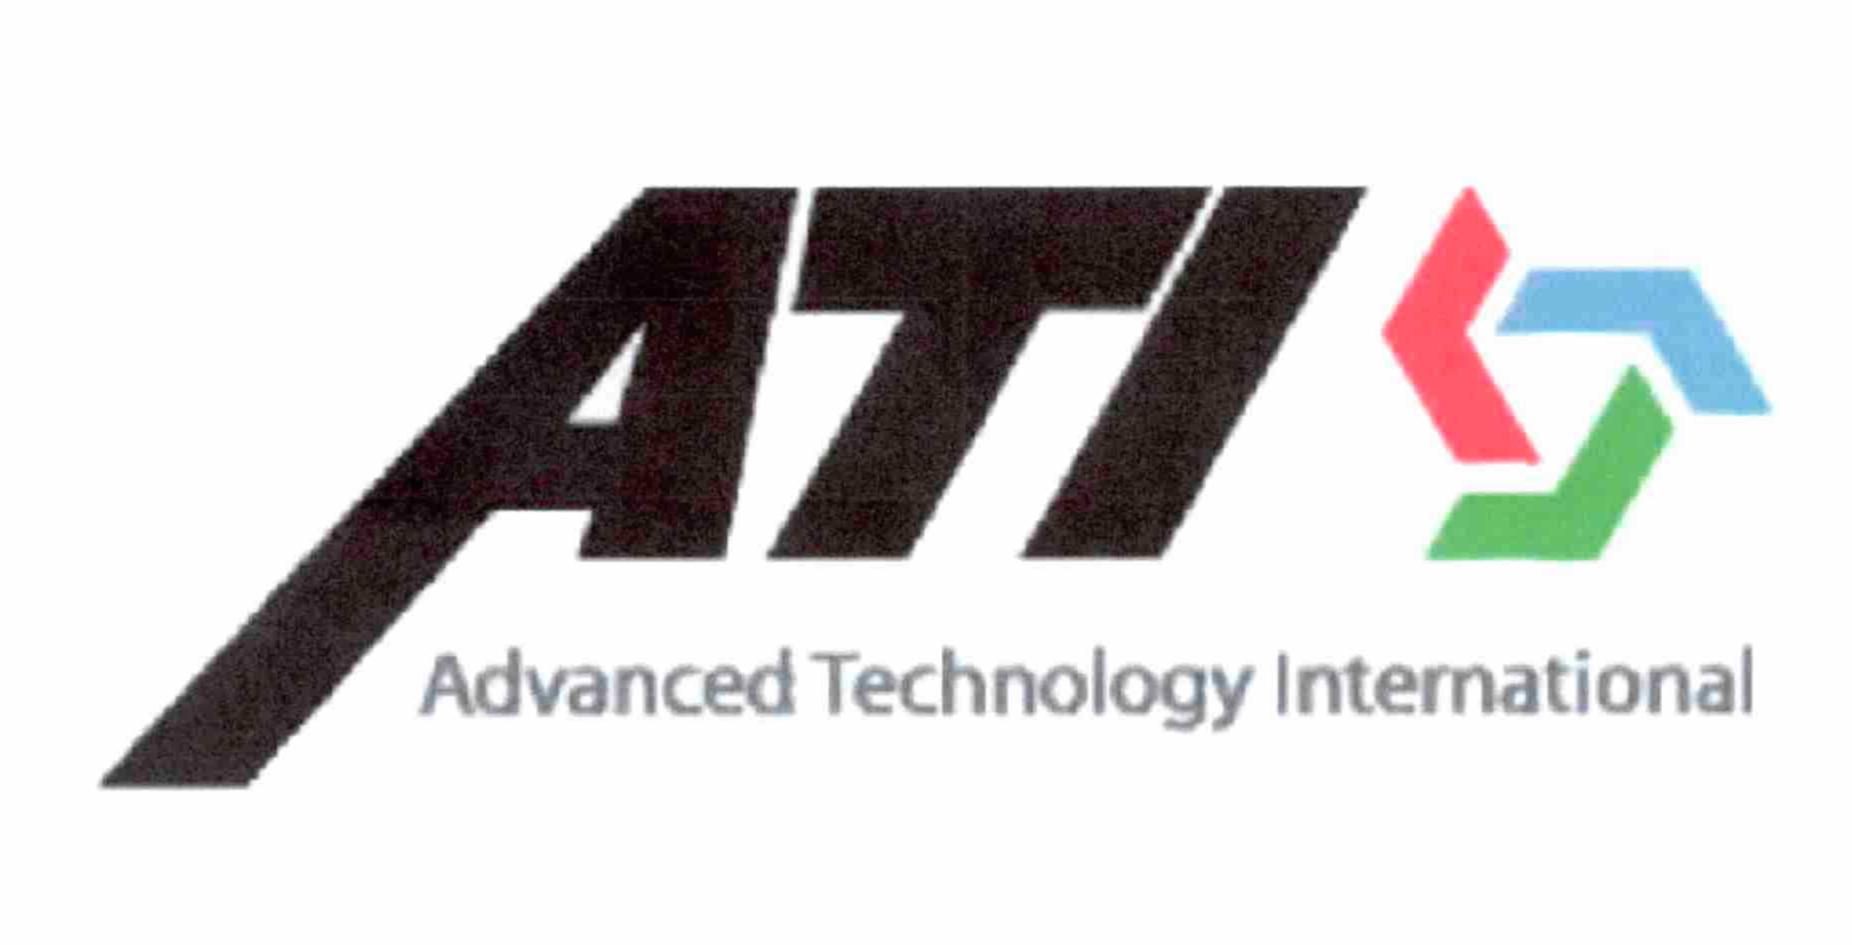 ATI ADVANCED TECHNOLOGY INTERNATIONAL